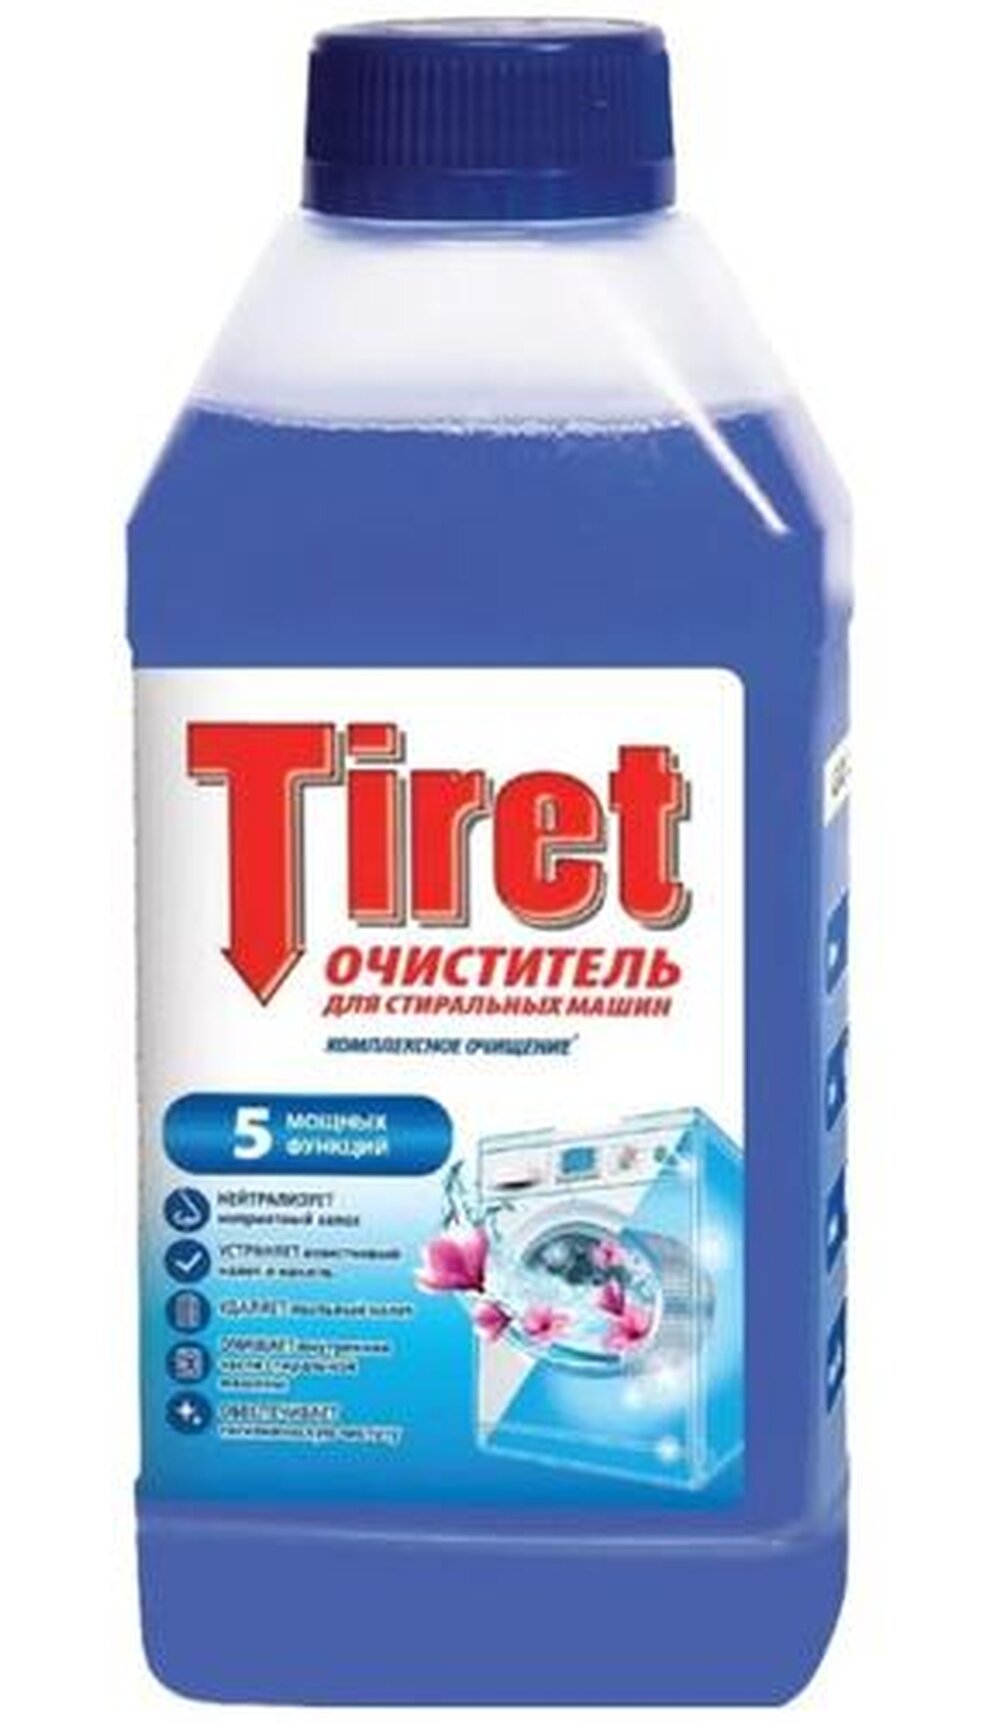 Гигиенический очиститель Tiret